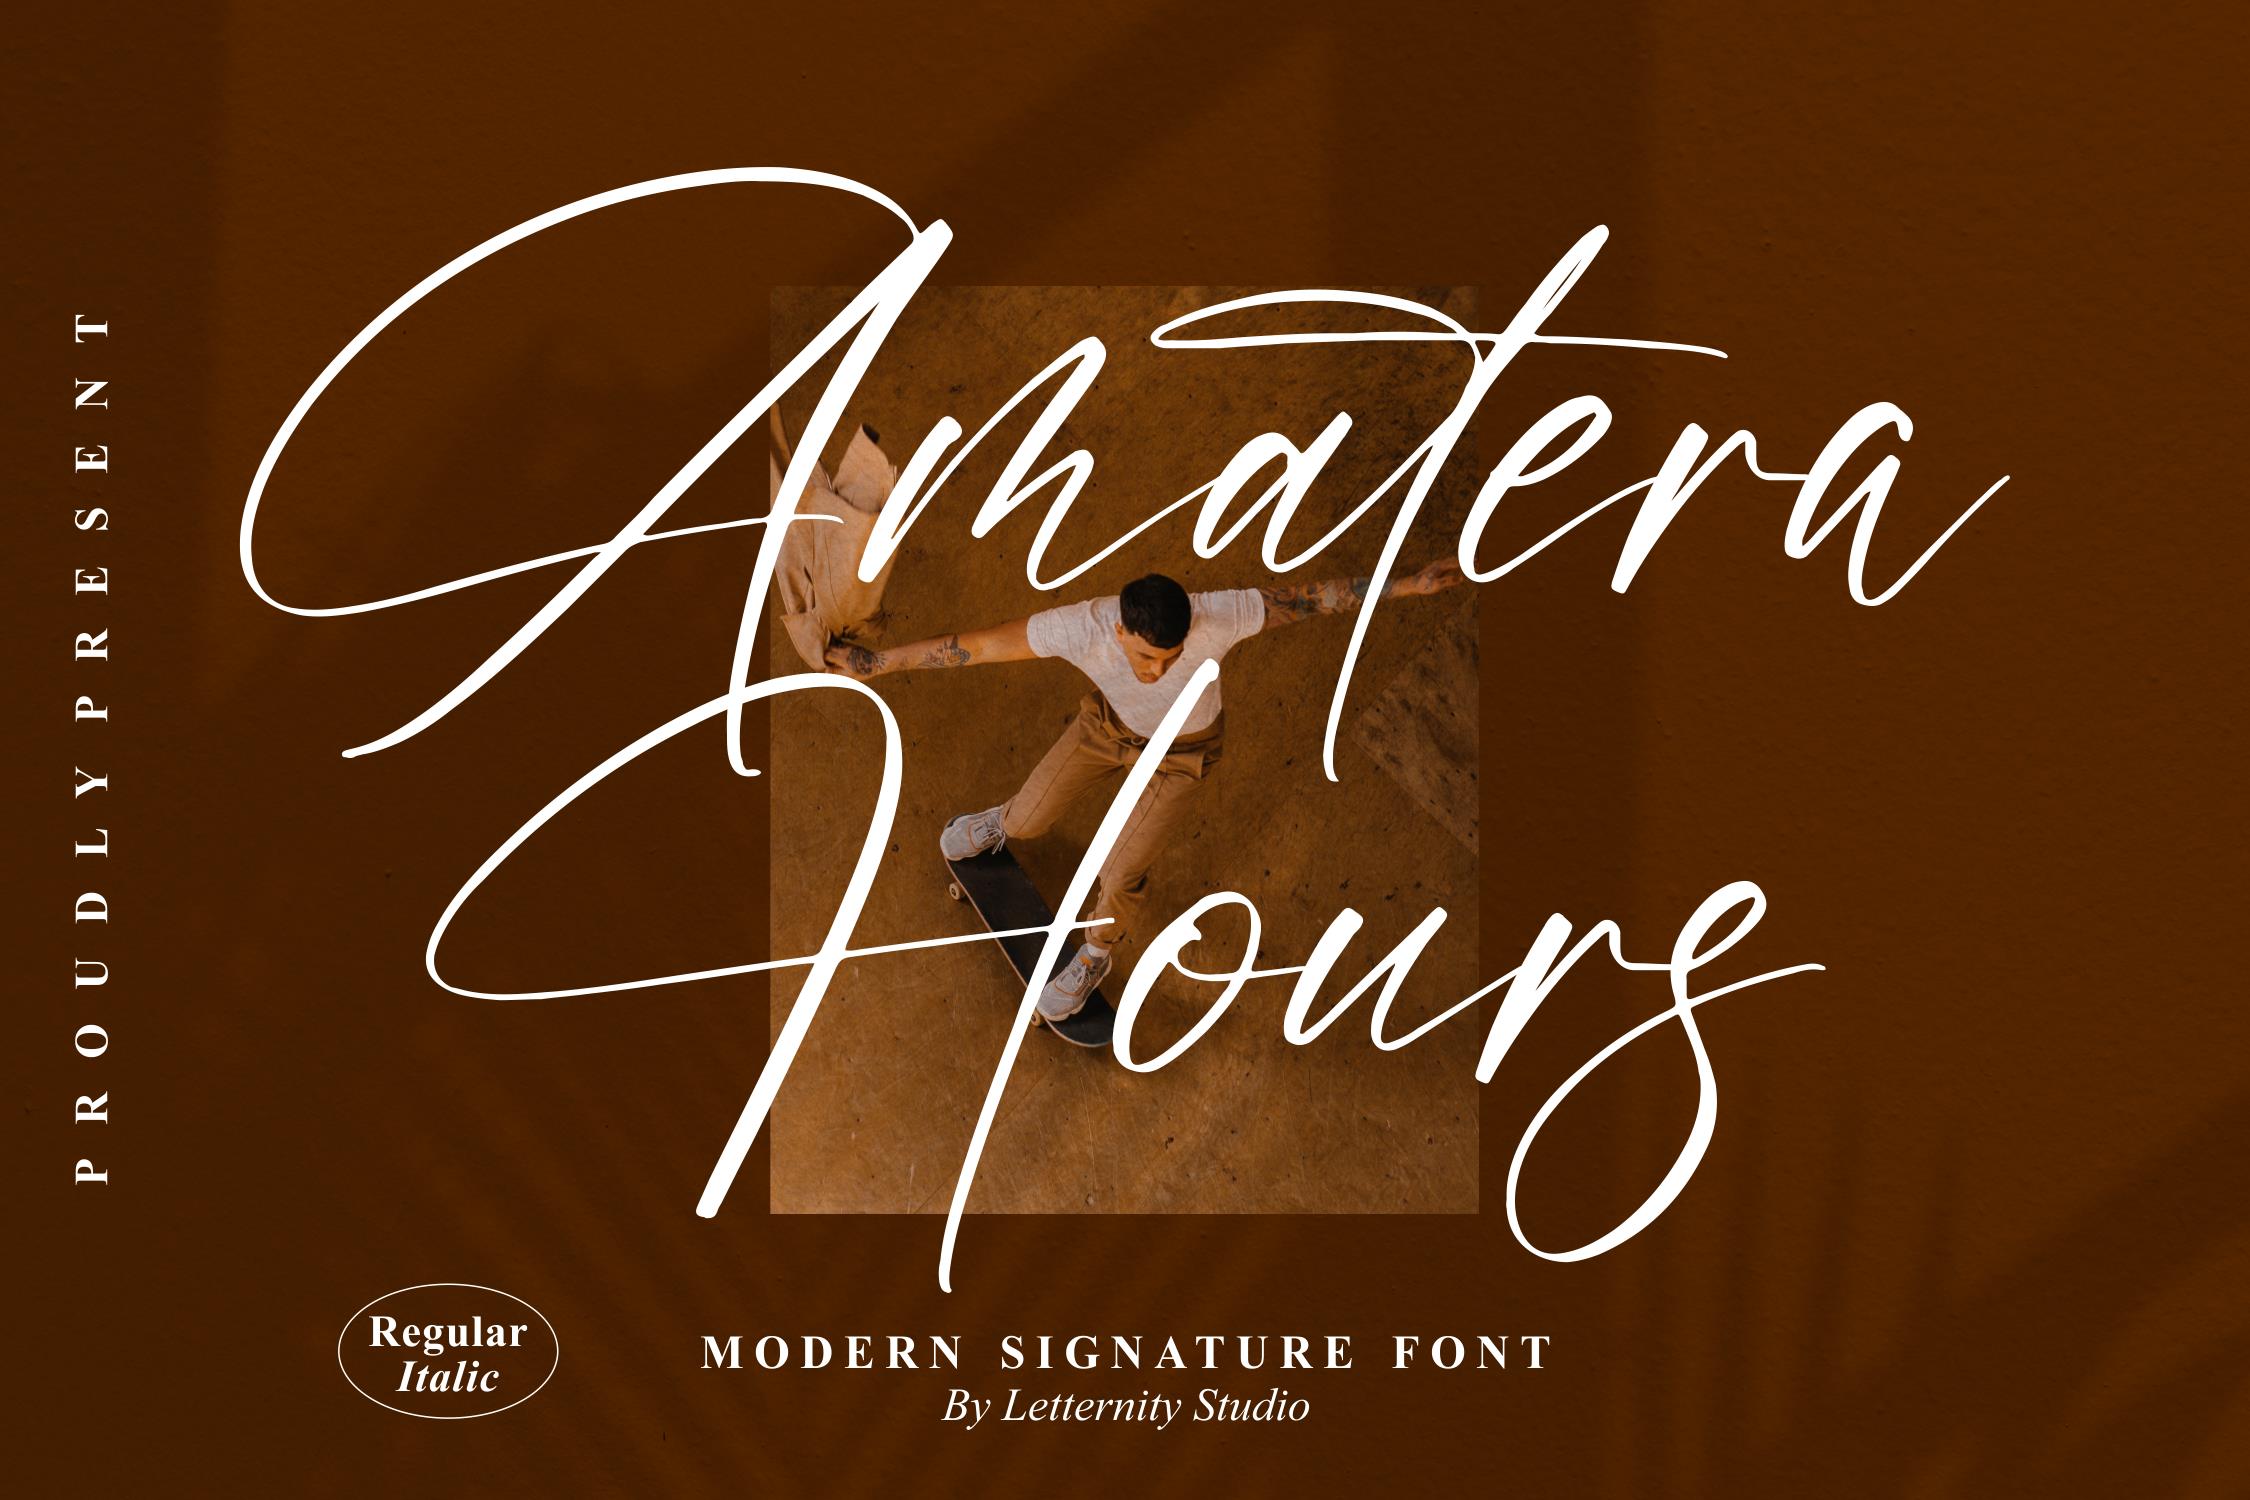 Amatera Hours